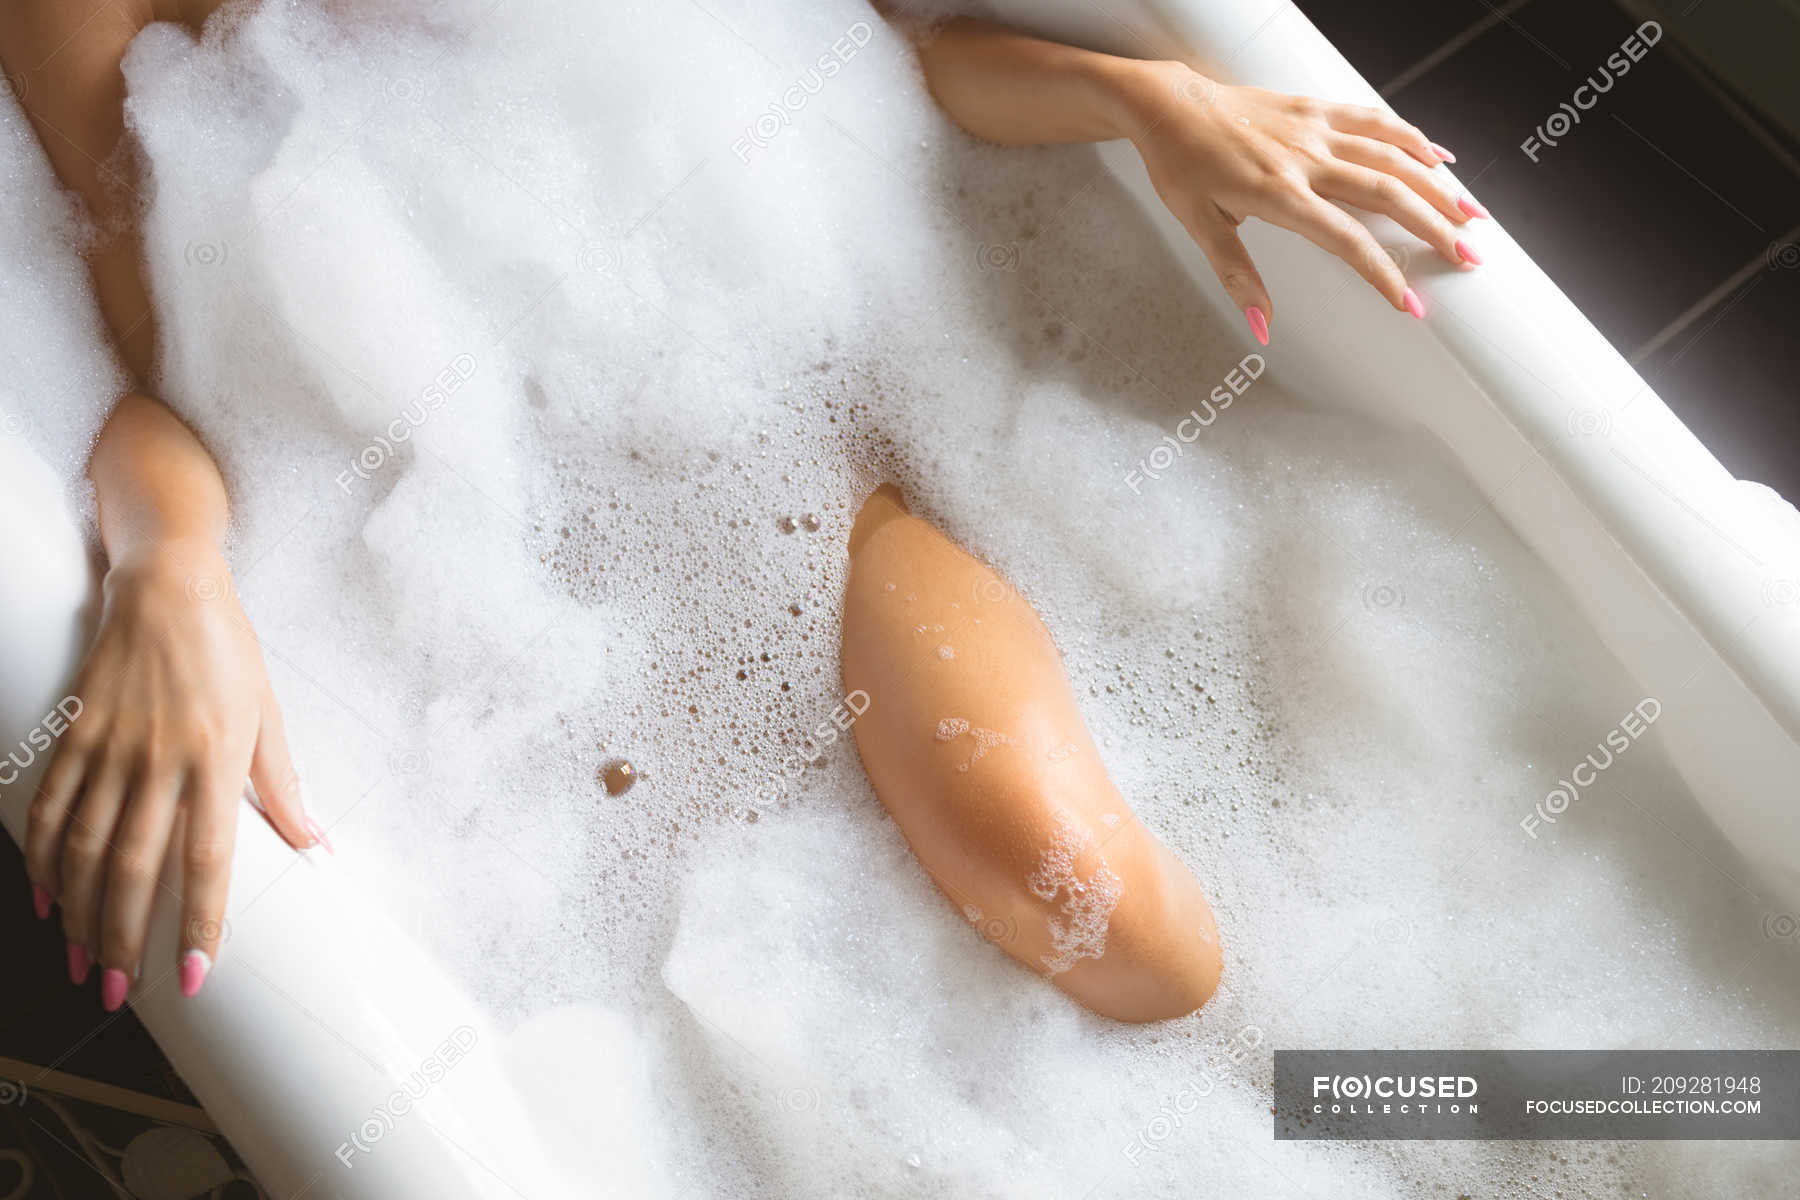 Миниатюрная азиатка принимает ванну с пенкой и мастурбирует лейкой